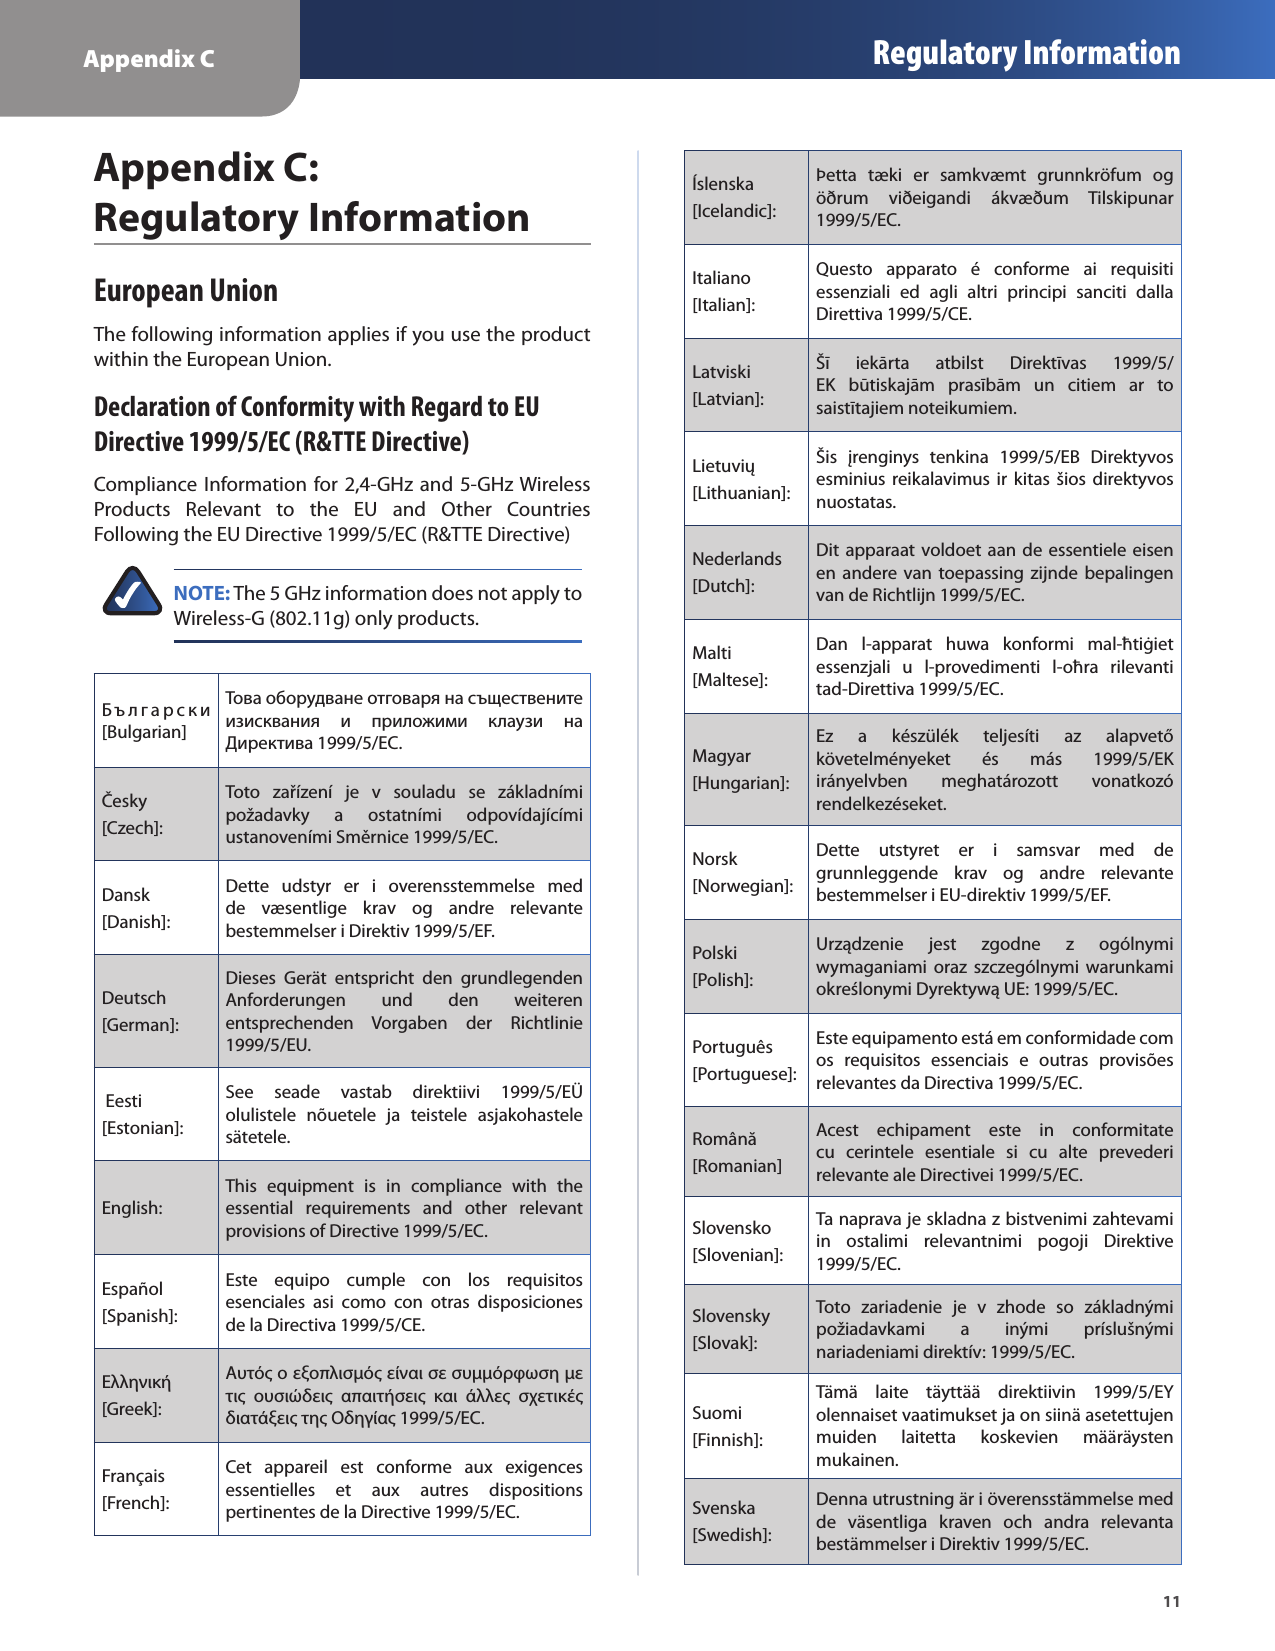 Appendix C Regulatory Information11Appendix C:  Regulatory InformationEuropean UnionThe following information applies if you use the product within the European Union.Declaration of Conformity with Regard to EU Directive 1999/5/EC (R&amp;TTE Directive) Compliance Information for 2,4-GHz and 5-GHz Wireless Products  Relevant  to  the  EU  and  Other  Countries Following the EU Directive 1999/5/EC (R&amp;TTE Directive)NOTE: The 5 GHz information does not apply to Wireless-G (802.11g) only products.Бъ л га р с к и [Bulgarian]Това оборудване отговаря на съществените изисквания  и  приложими  клаузи  на Директива 1999/5/ЕС.Česky [Czech]:Toto  zařízení  je  v  souladu  se  základními požadavky  a  ostatními  odpovídajícími ustanoveními Směrnice 1999/5/EC.Dansk [Danish]:Dette  udstyr  er  i  overensstemmelse  med de  væsentlige  krav  og  andre  relevante bestemmelser i Direktiv 1999/5/EF.Deutsch [German]:Dieses  Gerät  entspricht  den  grundlegenden Anforderungen  und  den  weiteren entsprechenden  Vorgaben  der  Richtlinie 1999/5/EU. Eesti [Estonian]:See  seade  vastab  direktiivi  1999/5/EÜ olulistele  nõuetele  ja  teistele  asjakohastele sätetele.English:This  equipment  is  in  compliance  with  the essential  requirements  and  other  relevant provisions of Directive 1999/5/EC.Español [Spanish]:Este  equipo  cumple  con  los  requisitos esenciales  asi  como  con  otras  disposiciones de la Directiva 1999/5/CE.Ελληνική [Greek]:Αυτός ο εξοπλισµός είναι σε συµµόρφωση µε τις  ουσιώδεις  απαιτήσεις  και  άλλες  σχετικές διατάξεις της Οδηγίας 1999/5/EC.Français [French]:Cet  appareil  est  conforme  aux  exigences essentielles  et  aux  autres  dispositions pertinentes de la Directive 1999/5/EC.Íslenska [Icelandic]:Þetta  tæki  er  samkvæmt  grunnkröfum  og öðrum  viðeigandi  ákvæðum  Tilskipunar 1999/5/EC.Italiano [Italian]:Questo  apparato  é  conforme  ai  requisiti essenziali  ed  agli  altri  principi  sanciti  dalla Direttiva 1999/5/CE.Latviski [Latvian]:Šī  iekārta  atbilst  Direktīvas  1999/5/EK  būtiskajām  prasībām  un  citiem  ar  to saistītajiem noteikumiem.Lietuvių [Lithuanian]:Šis  įrenginys  tenkina  1999/5/EB  Direktyvos esminius  reikalavimus  ir  kitas  šios direktyvos nuostatas.Nederlands[Dutch]:Dit apparaat voldoet aan de  essentiele eisen en  andere van toepassing  zijnde  bepalingen van de Richtlijn 1999/5/EC.Malti [Maltese]:Dan  l-apparat  huwa  konformi  mal-ħtiġiet essenzjali  u  l-provedimenti  l-oħra  rilevanti tad-Direttiva 1999/5/EC.Magyar[Hungarian]:Ez  a  készülék  teljesíti  az  alapvető követelményeket  és  más  1999/5/EK irányelvben  meghatározott  vonatkozó rendelkezéseket.Norsk[Norwegian]:Dette  utstyret  er  i  samsvar  med  de grunnleggende  krav  og  andre  relevante bestemmelser i EU-direktiv 1999/5/EF.Polski [Polish]:Urządzenie  jest  zgodne  z  ogólnymi wymaganiami  oraz  szczególnymi  warunkami określonymi Dyrektywą UE: 1999/5/EC.Português [Portuguese]:Este equipamento está em conformidade com os  requisitos  essenciais  e  outras  provisões relevantes da Directiva 1999/5/EC.Română [Romanian]Acest  echipament  este  in  conformitate cu  cerintele  esentiale  si  cu  alte  prevederi relevante ale Directivei 1999/5/EC.Slovensko [Slovenian]:Ta naprava je skladna z bistvenimi zahtevami in  ostalimi  relevantnimi  pogoji  Direktive 1999/5/EC.Slovensky [Slovak]:Toto  zariadenie  je  v  zhode  so  základnými požiadavkami  a  inými  príslušnými nariadeniami direktív: 1999/5/EC. Suomi [Finnish]:Tämä  laite  täyttää  direktiivin  1999/5/EY olennaiset vaatimukset ja on siinä asetettujen muiden  laitetta  koskevien  määräysten mukainen.Svenska [Swedish]:Denna utrustning är i överensstämmelse med de  väsentliga  kraven  och  andra  relevanta bestämmelser i Direktiv 1999/5/EC.